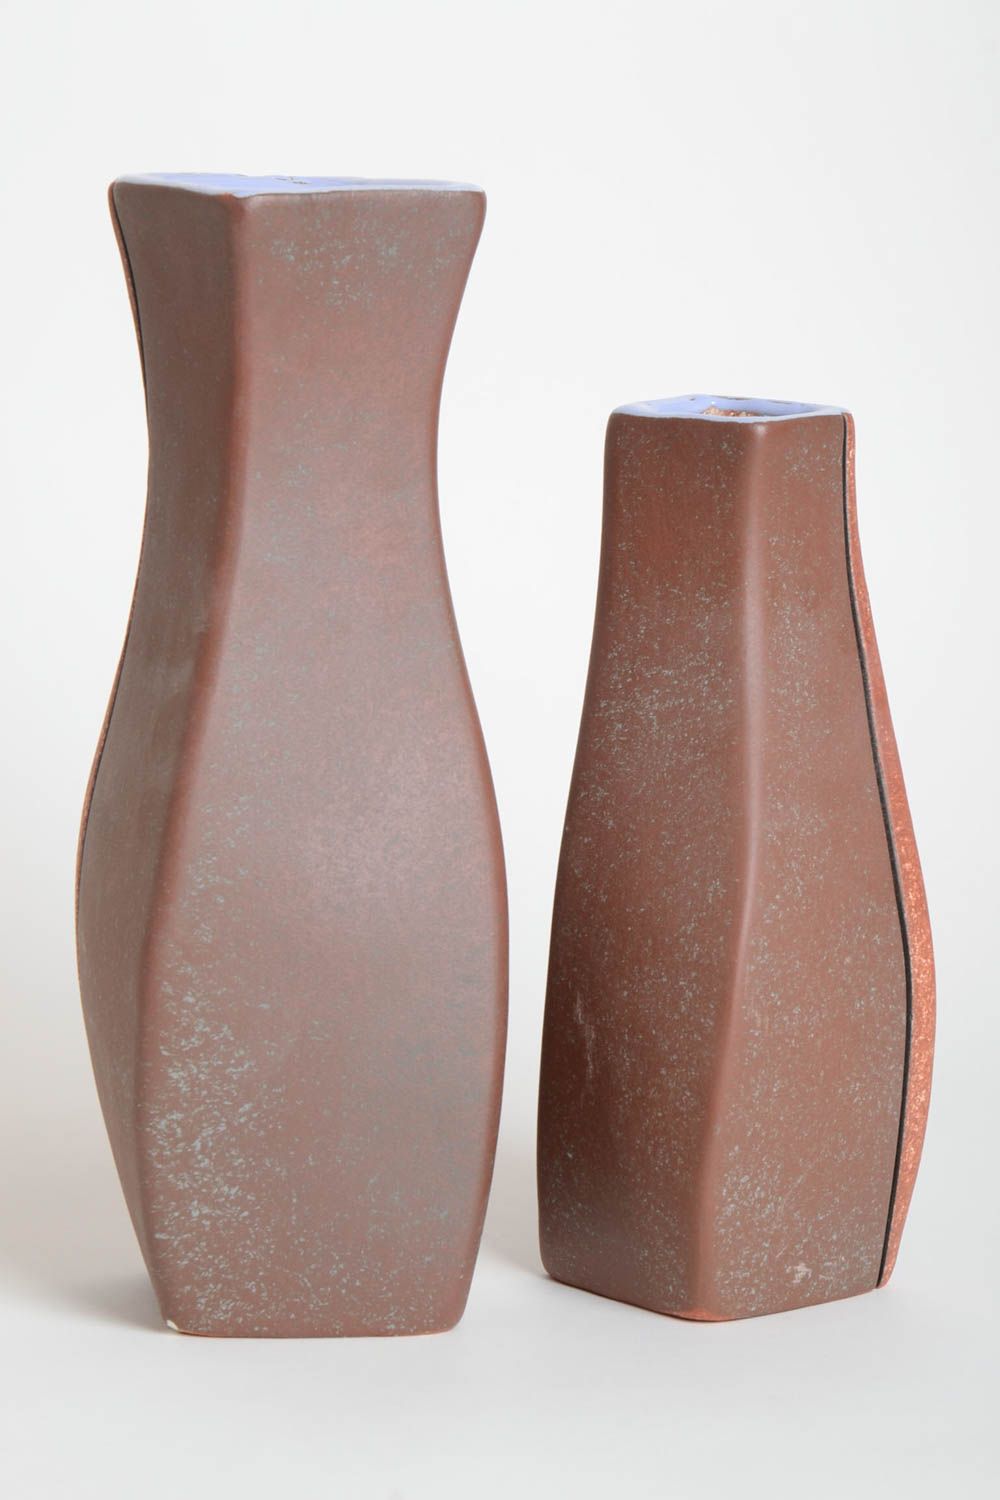 Handmade Keramik Vasen Haus Deko hohe ausgefallene Vasen mit originellem Muster  foto 4